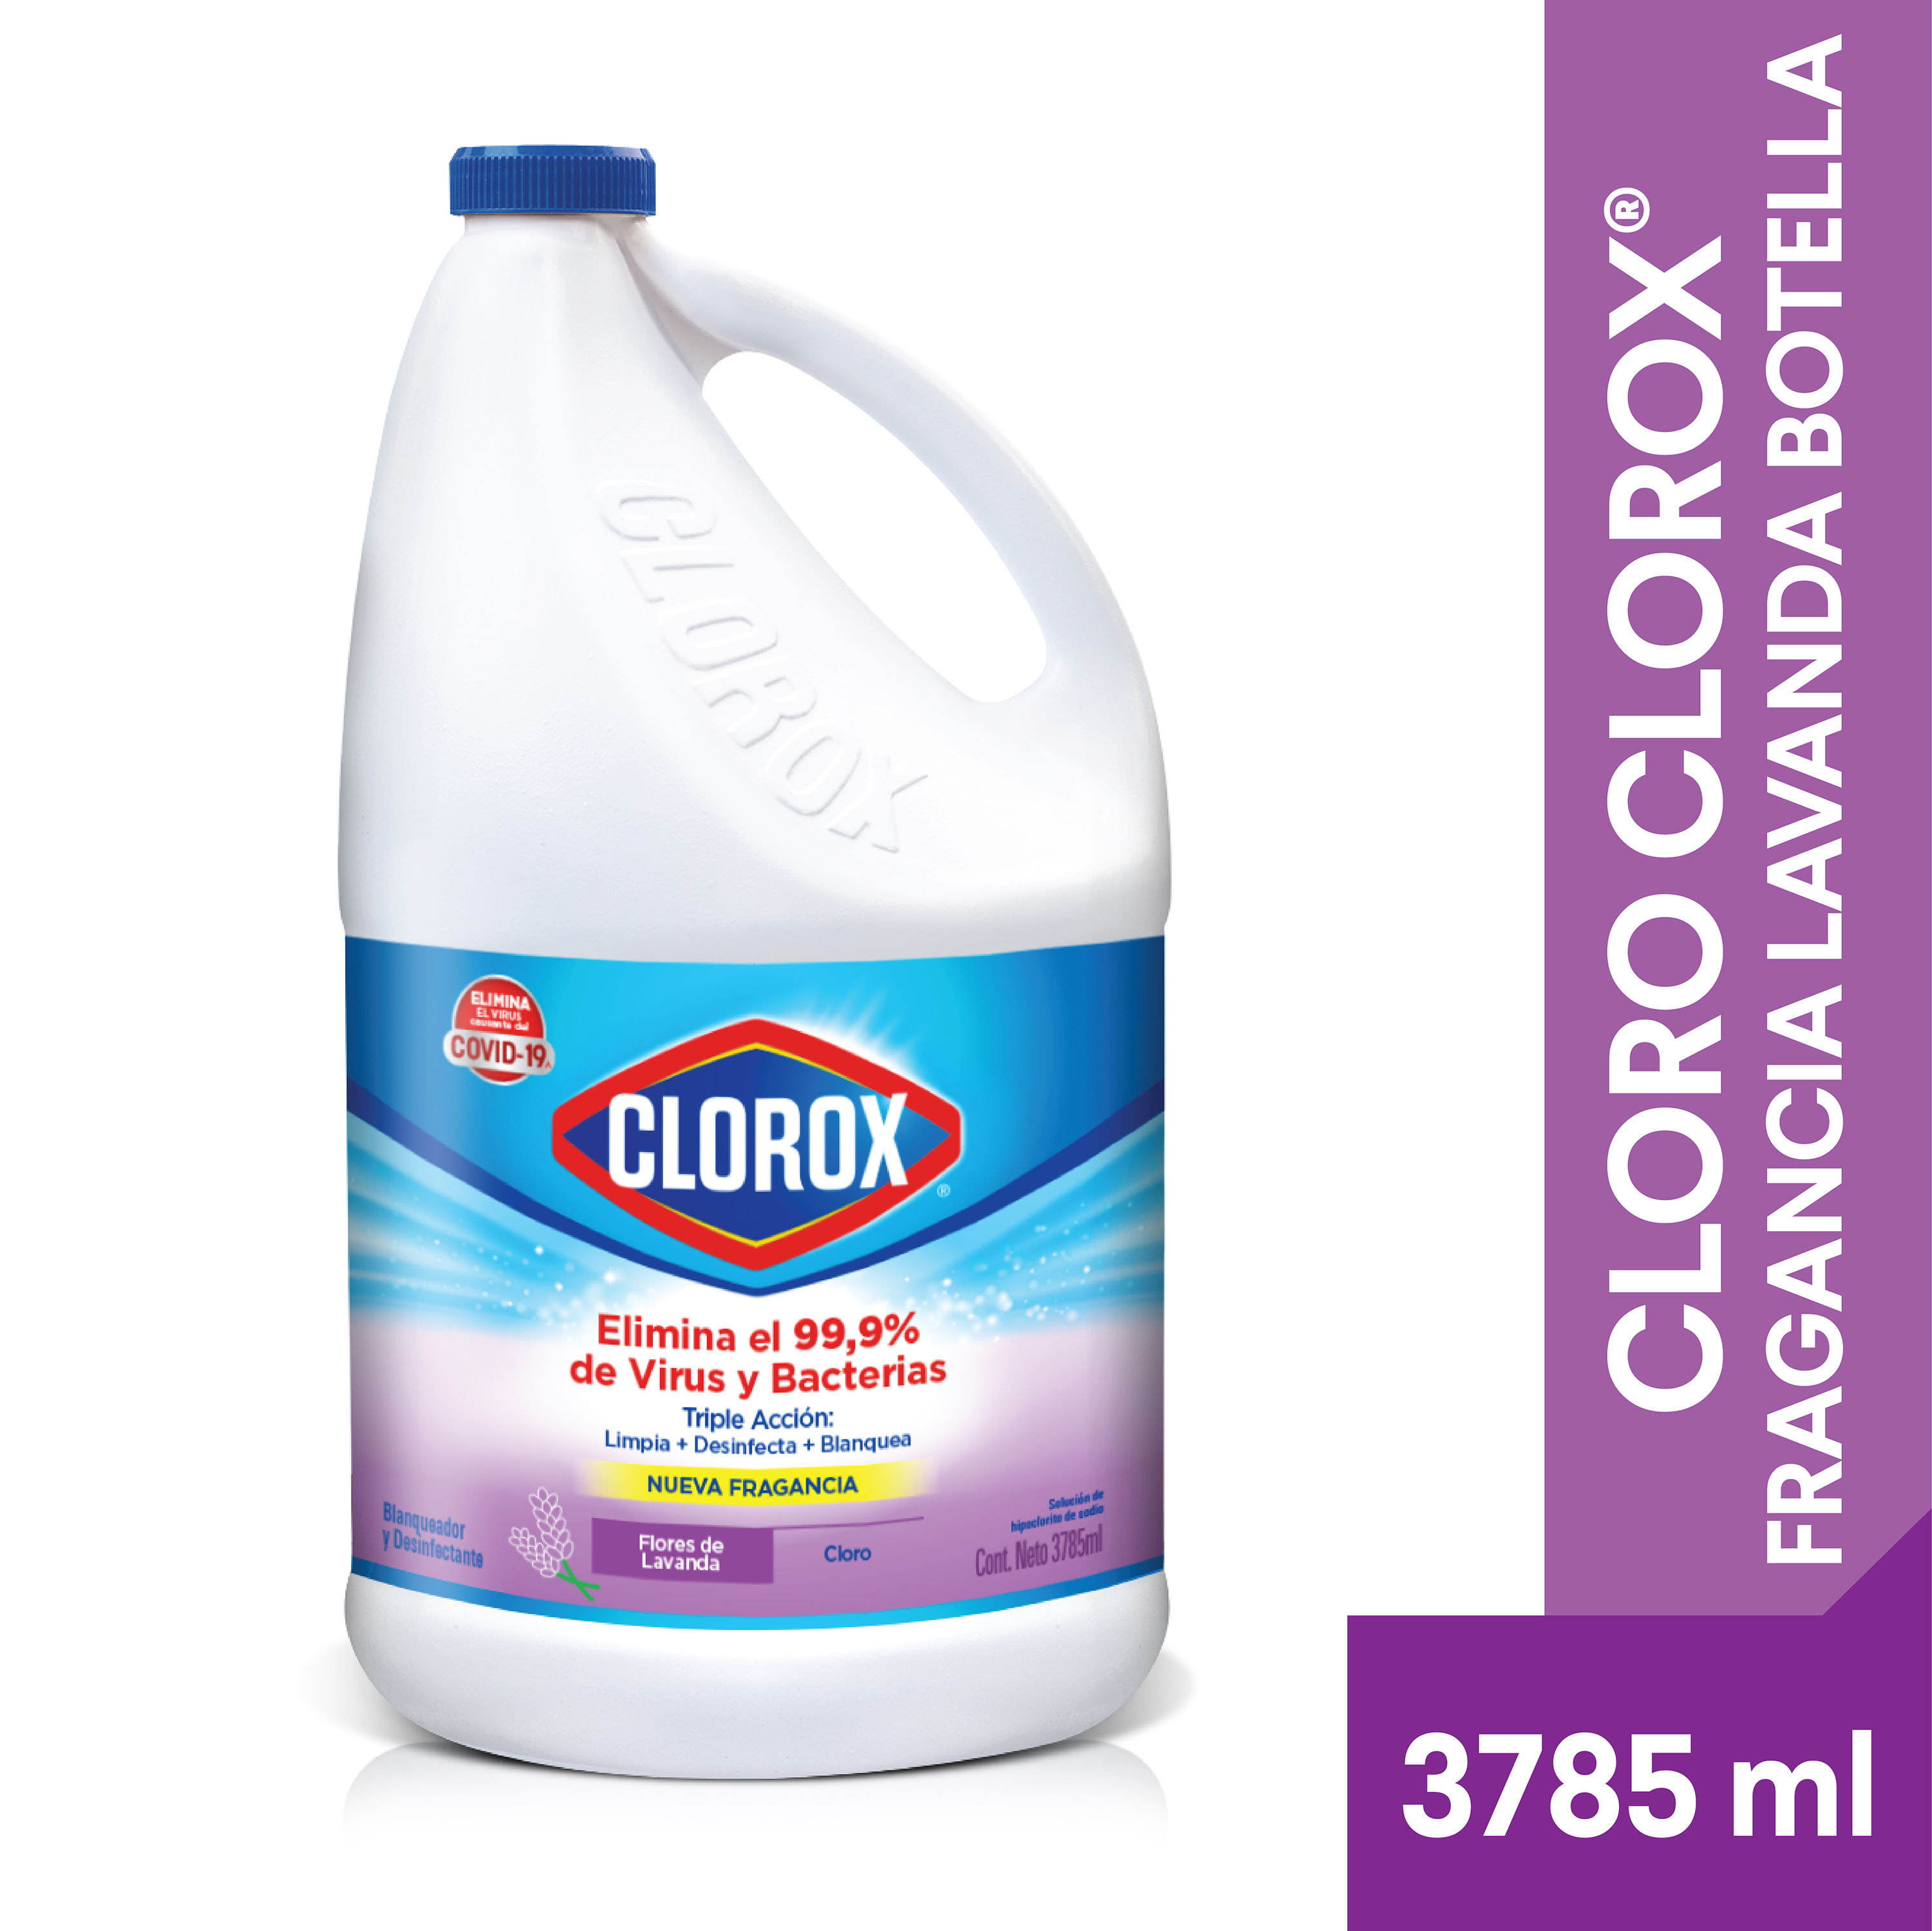 Cloro-Marca-Clorox-Fragancia-Lavanda-Gal-n-Blanqueador-Y-Desinfectante-3785ml-1-39457